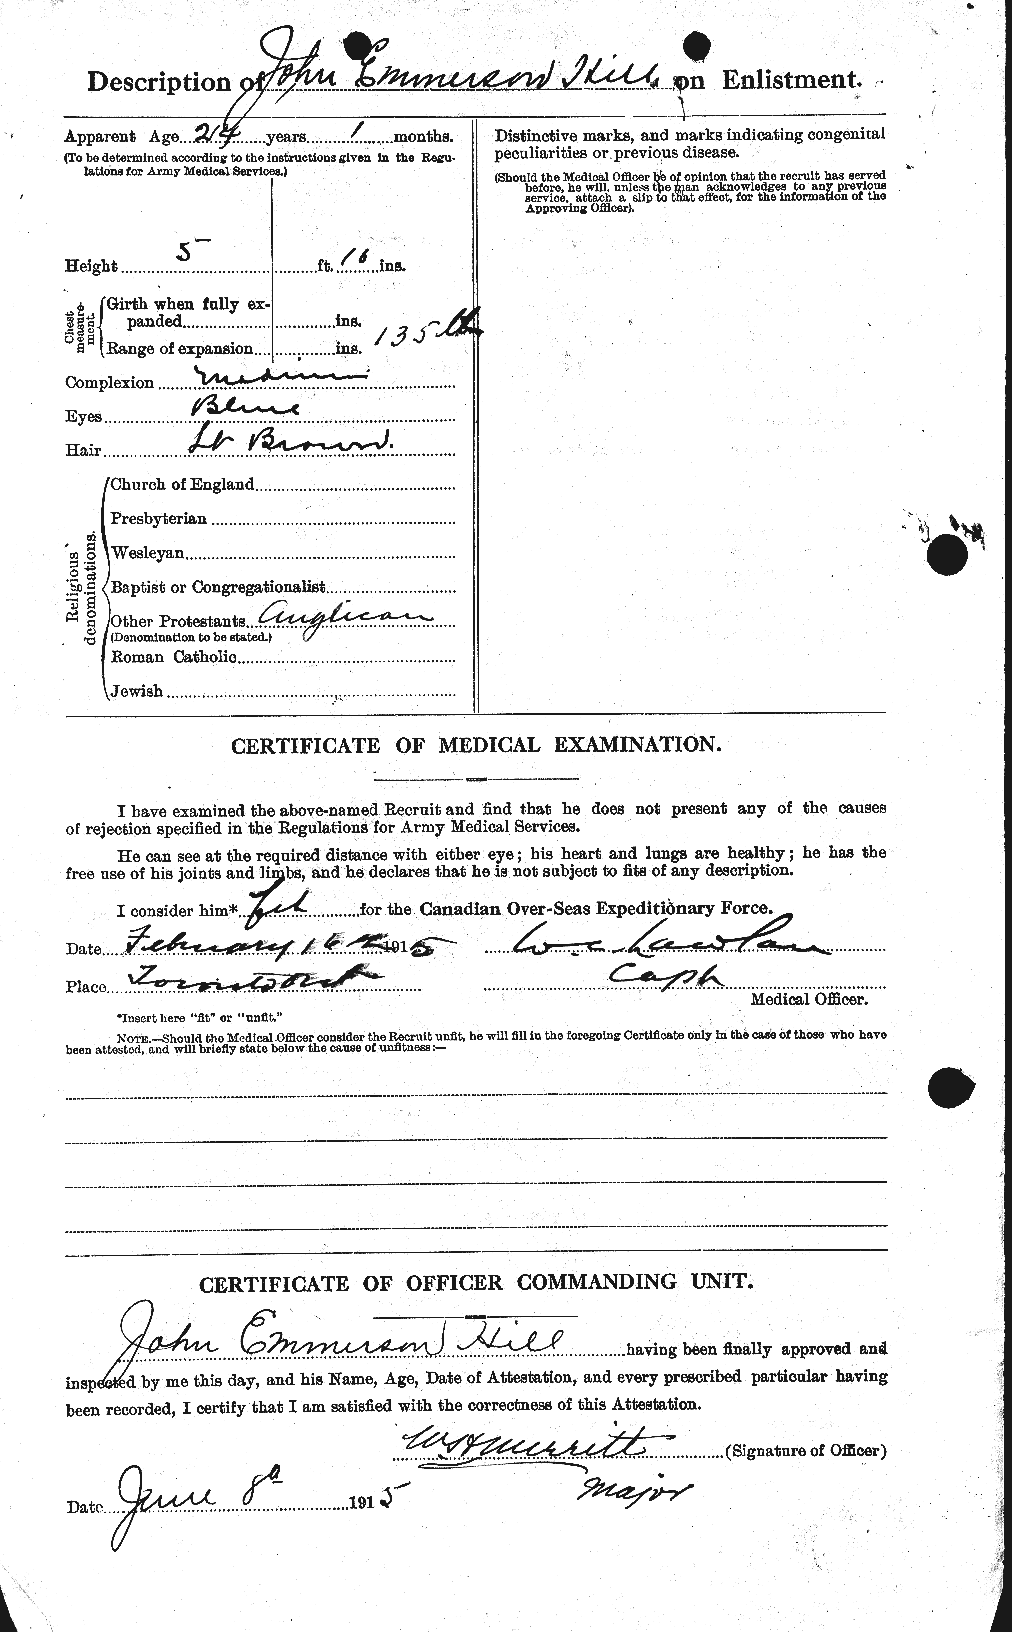 Dossiers du Personnel de la Première Guerre mondiale - CEC 398767b